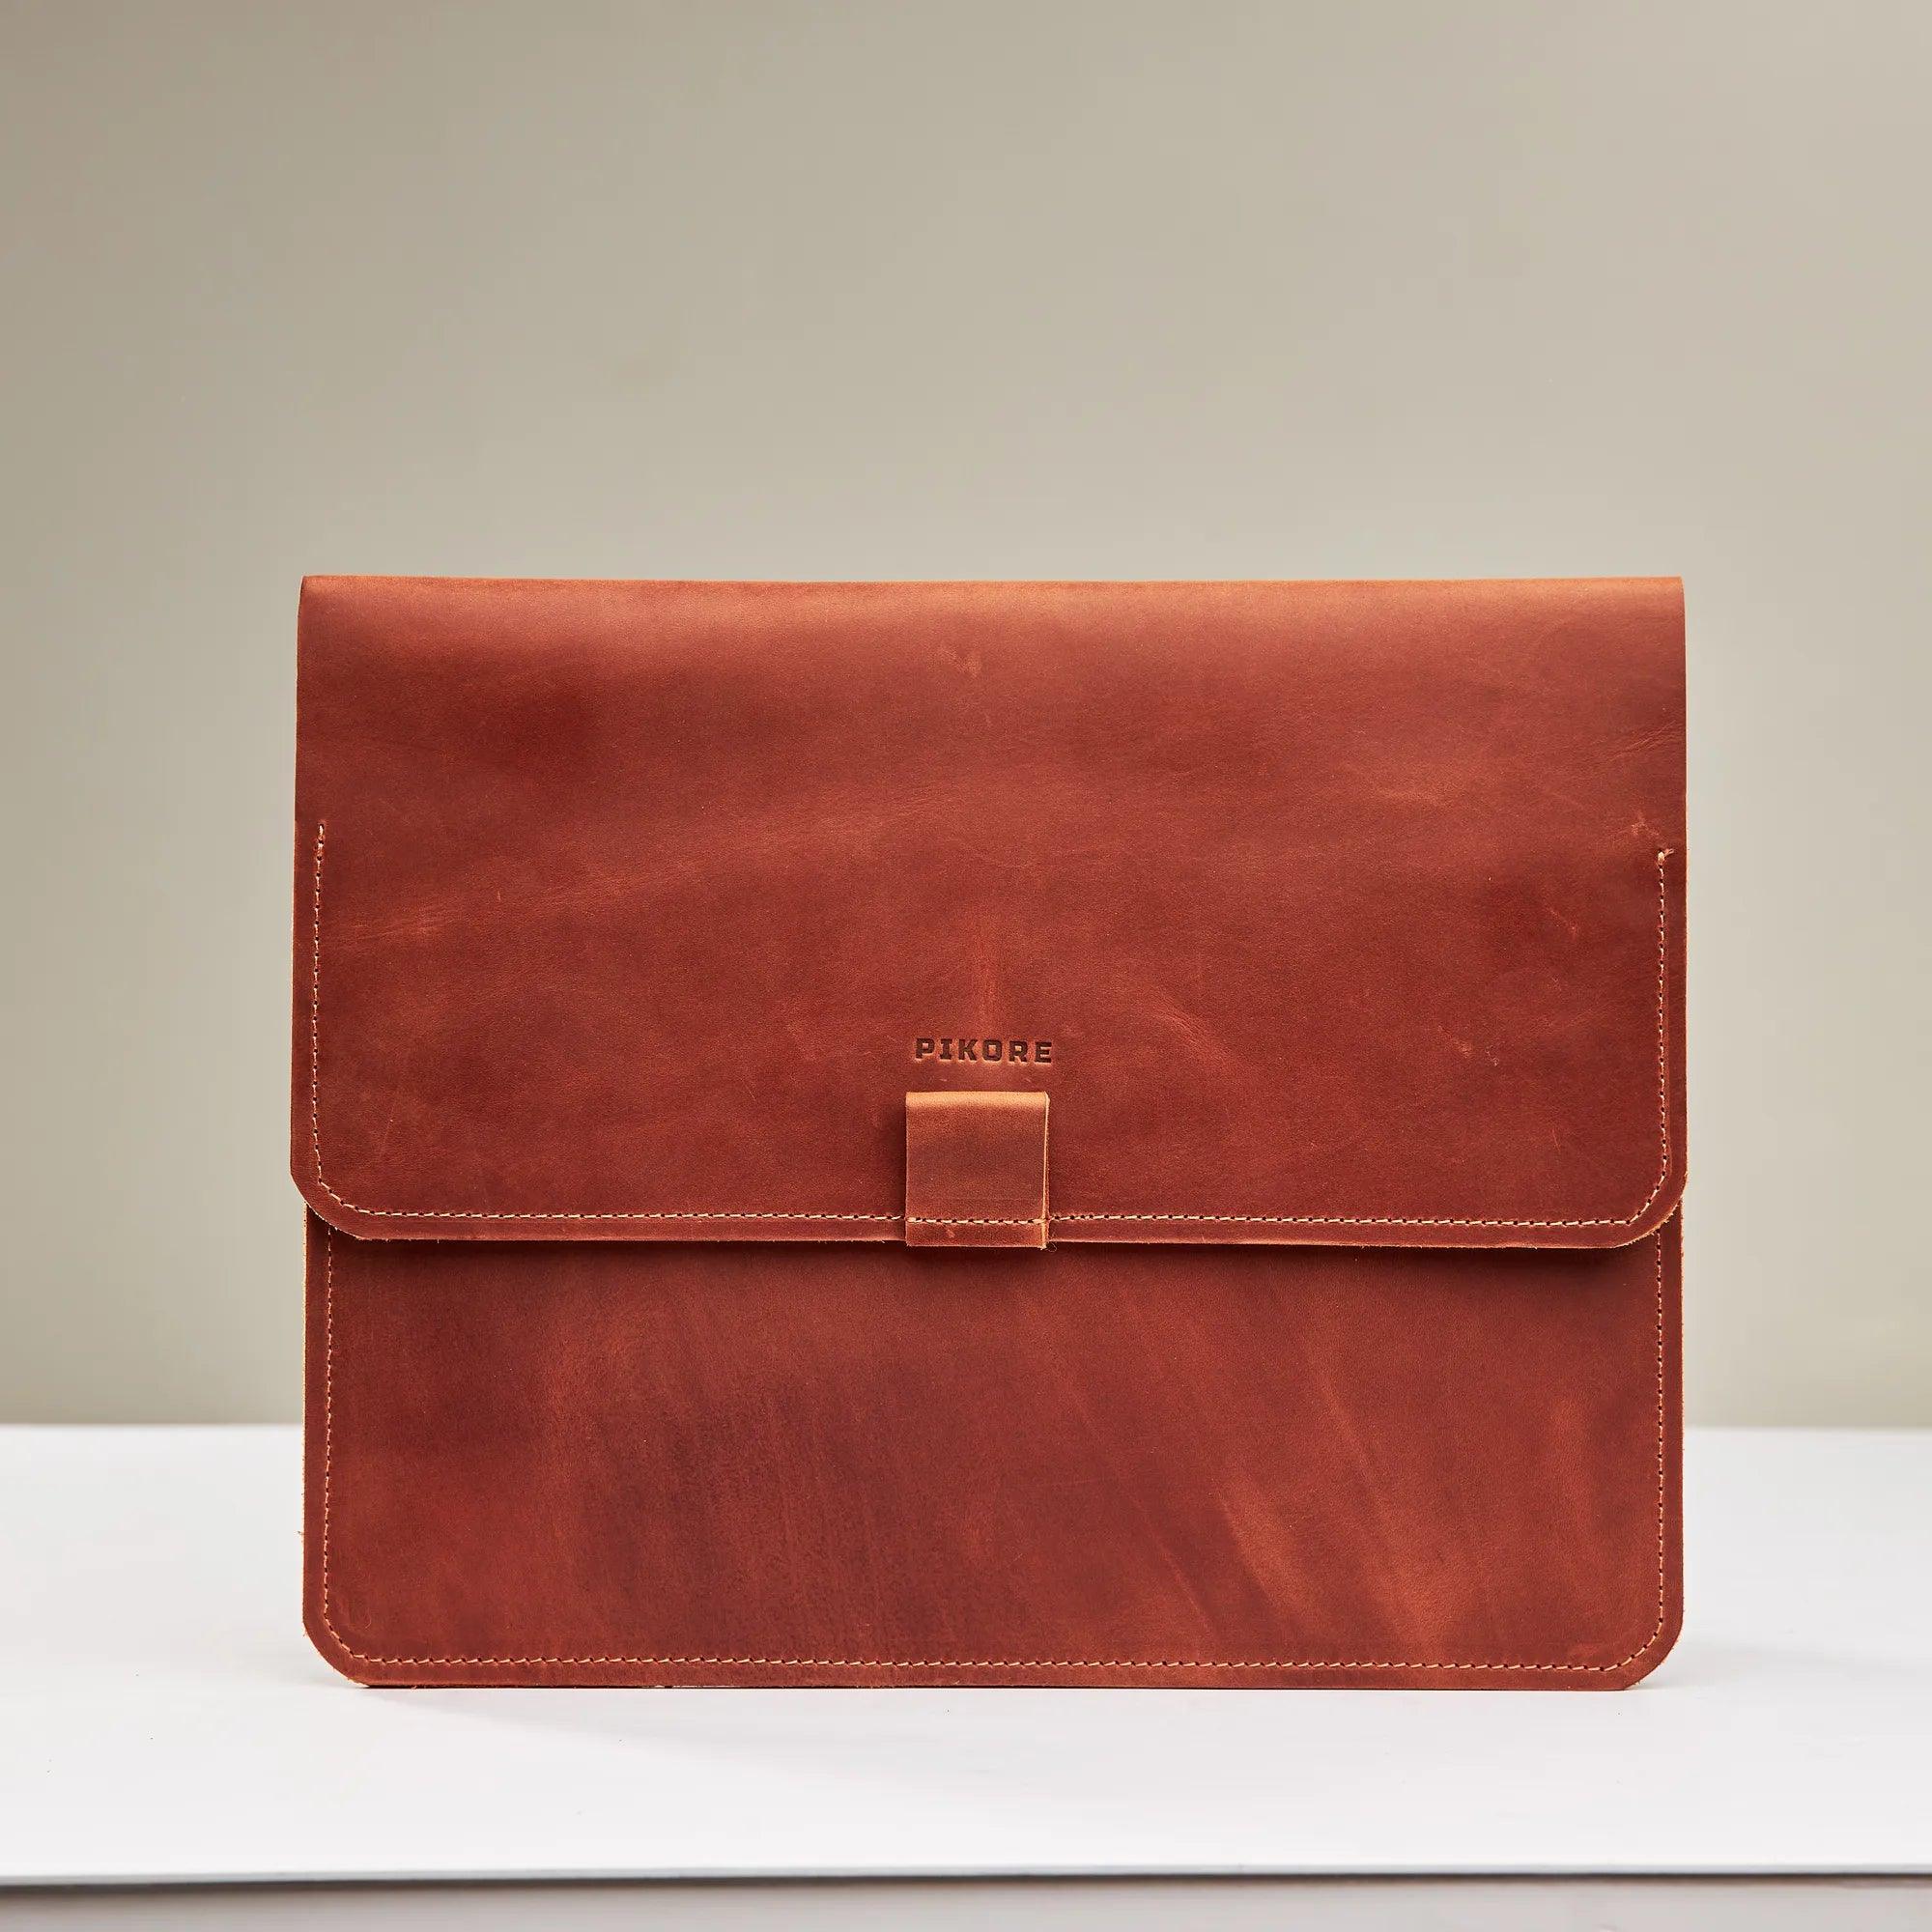 Leather Macbook Portfolio - Pikore